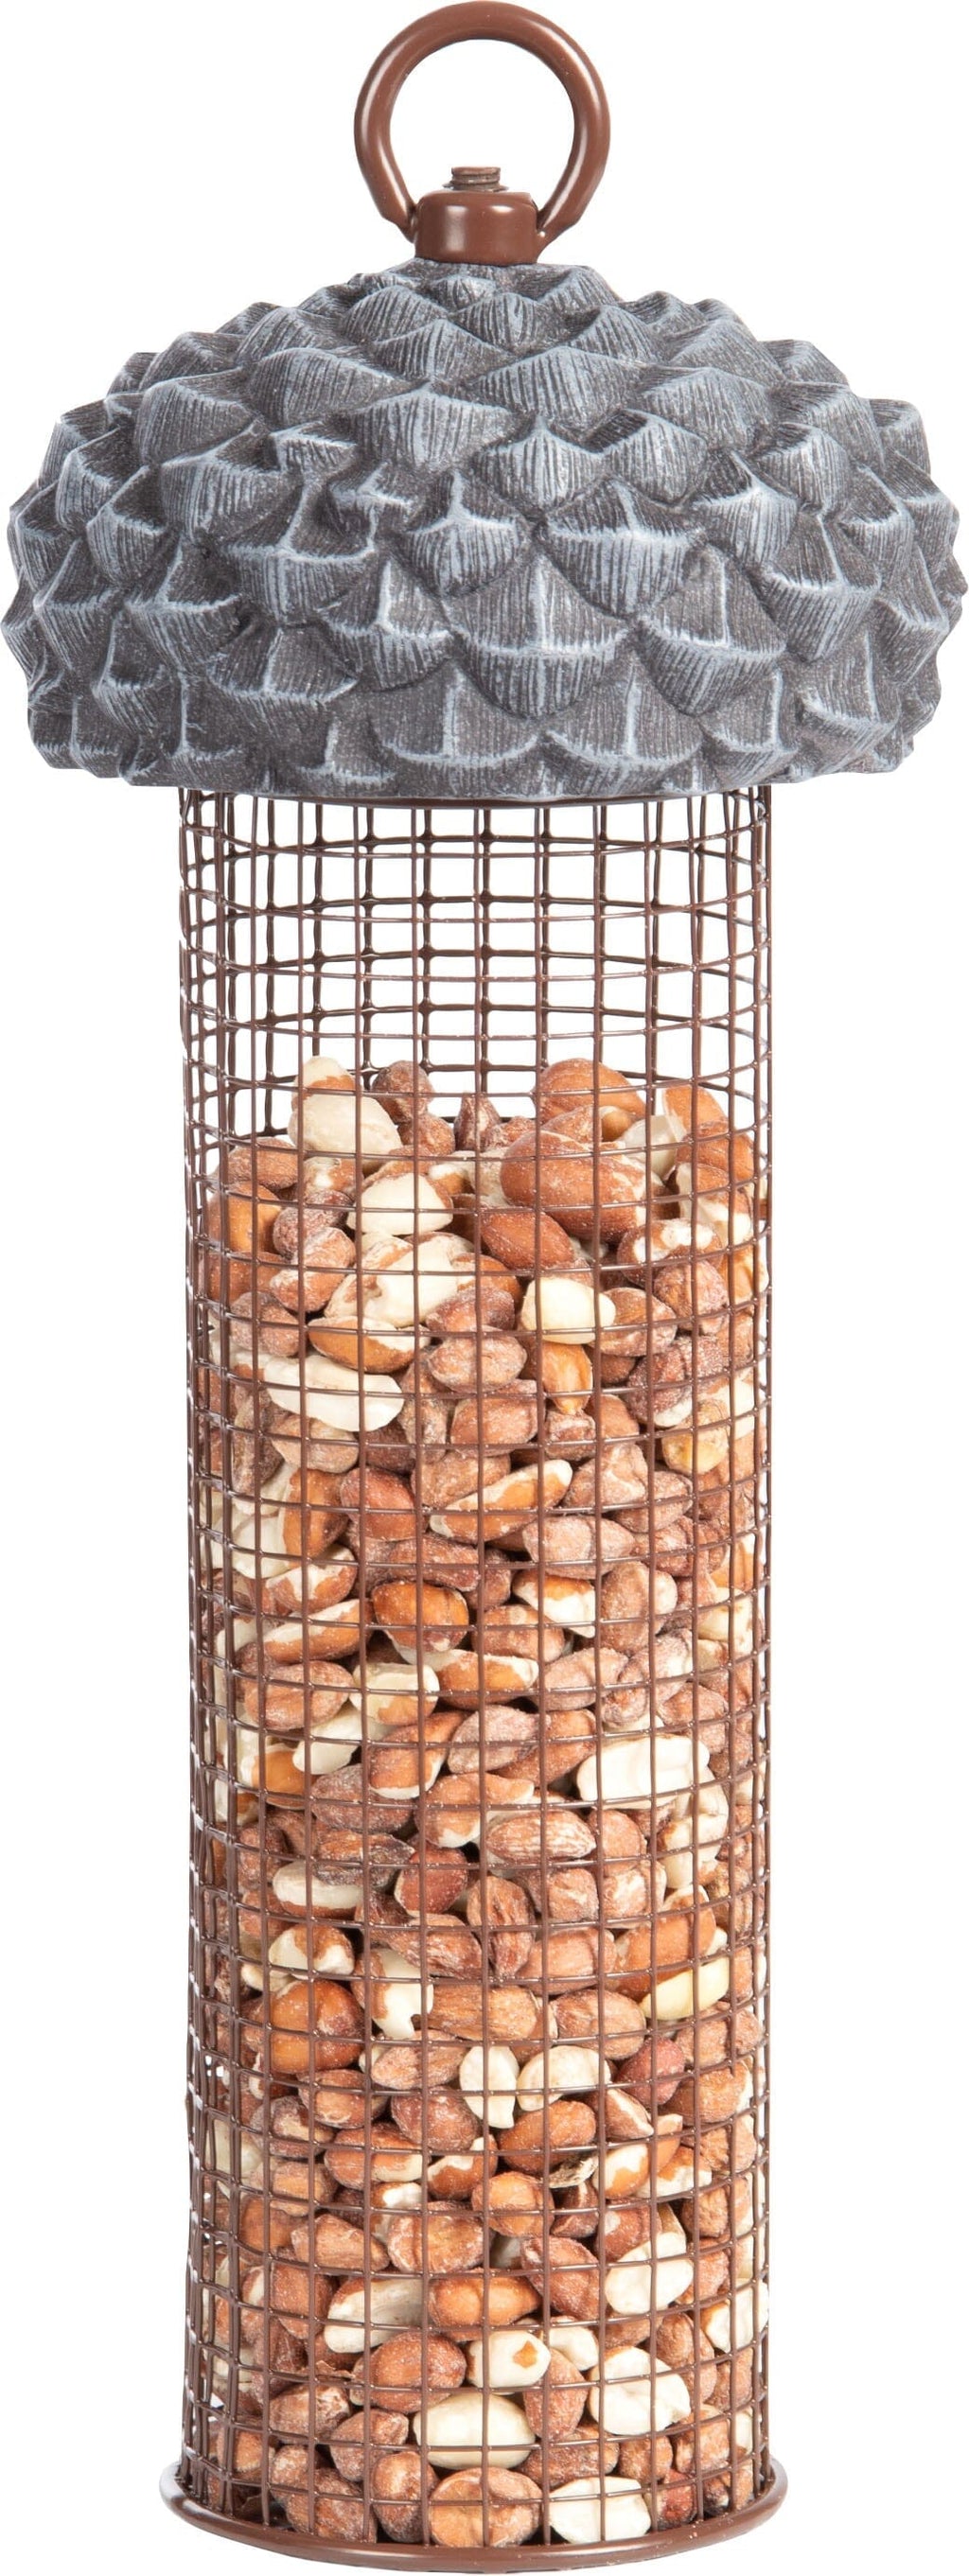 Esschert Design Acorn Nut Feeder for Wild Birds and Squirrels - 6 Oz Cap  